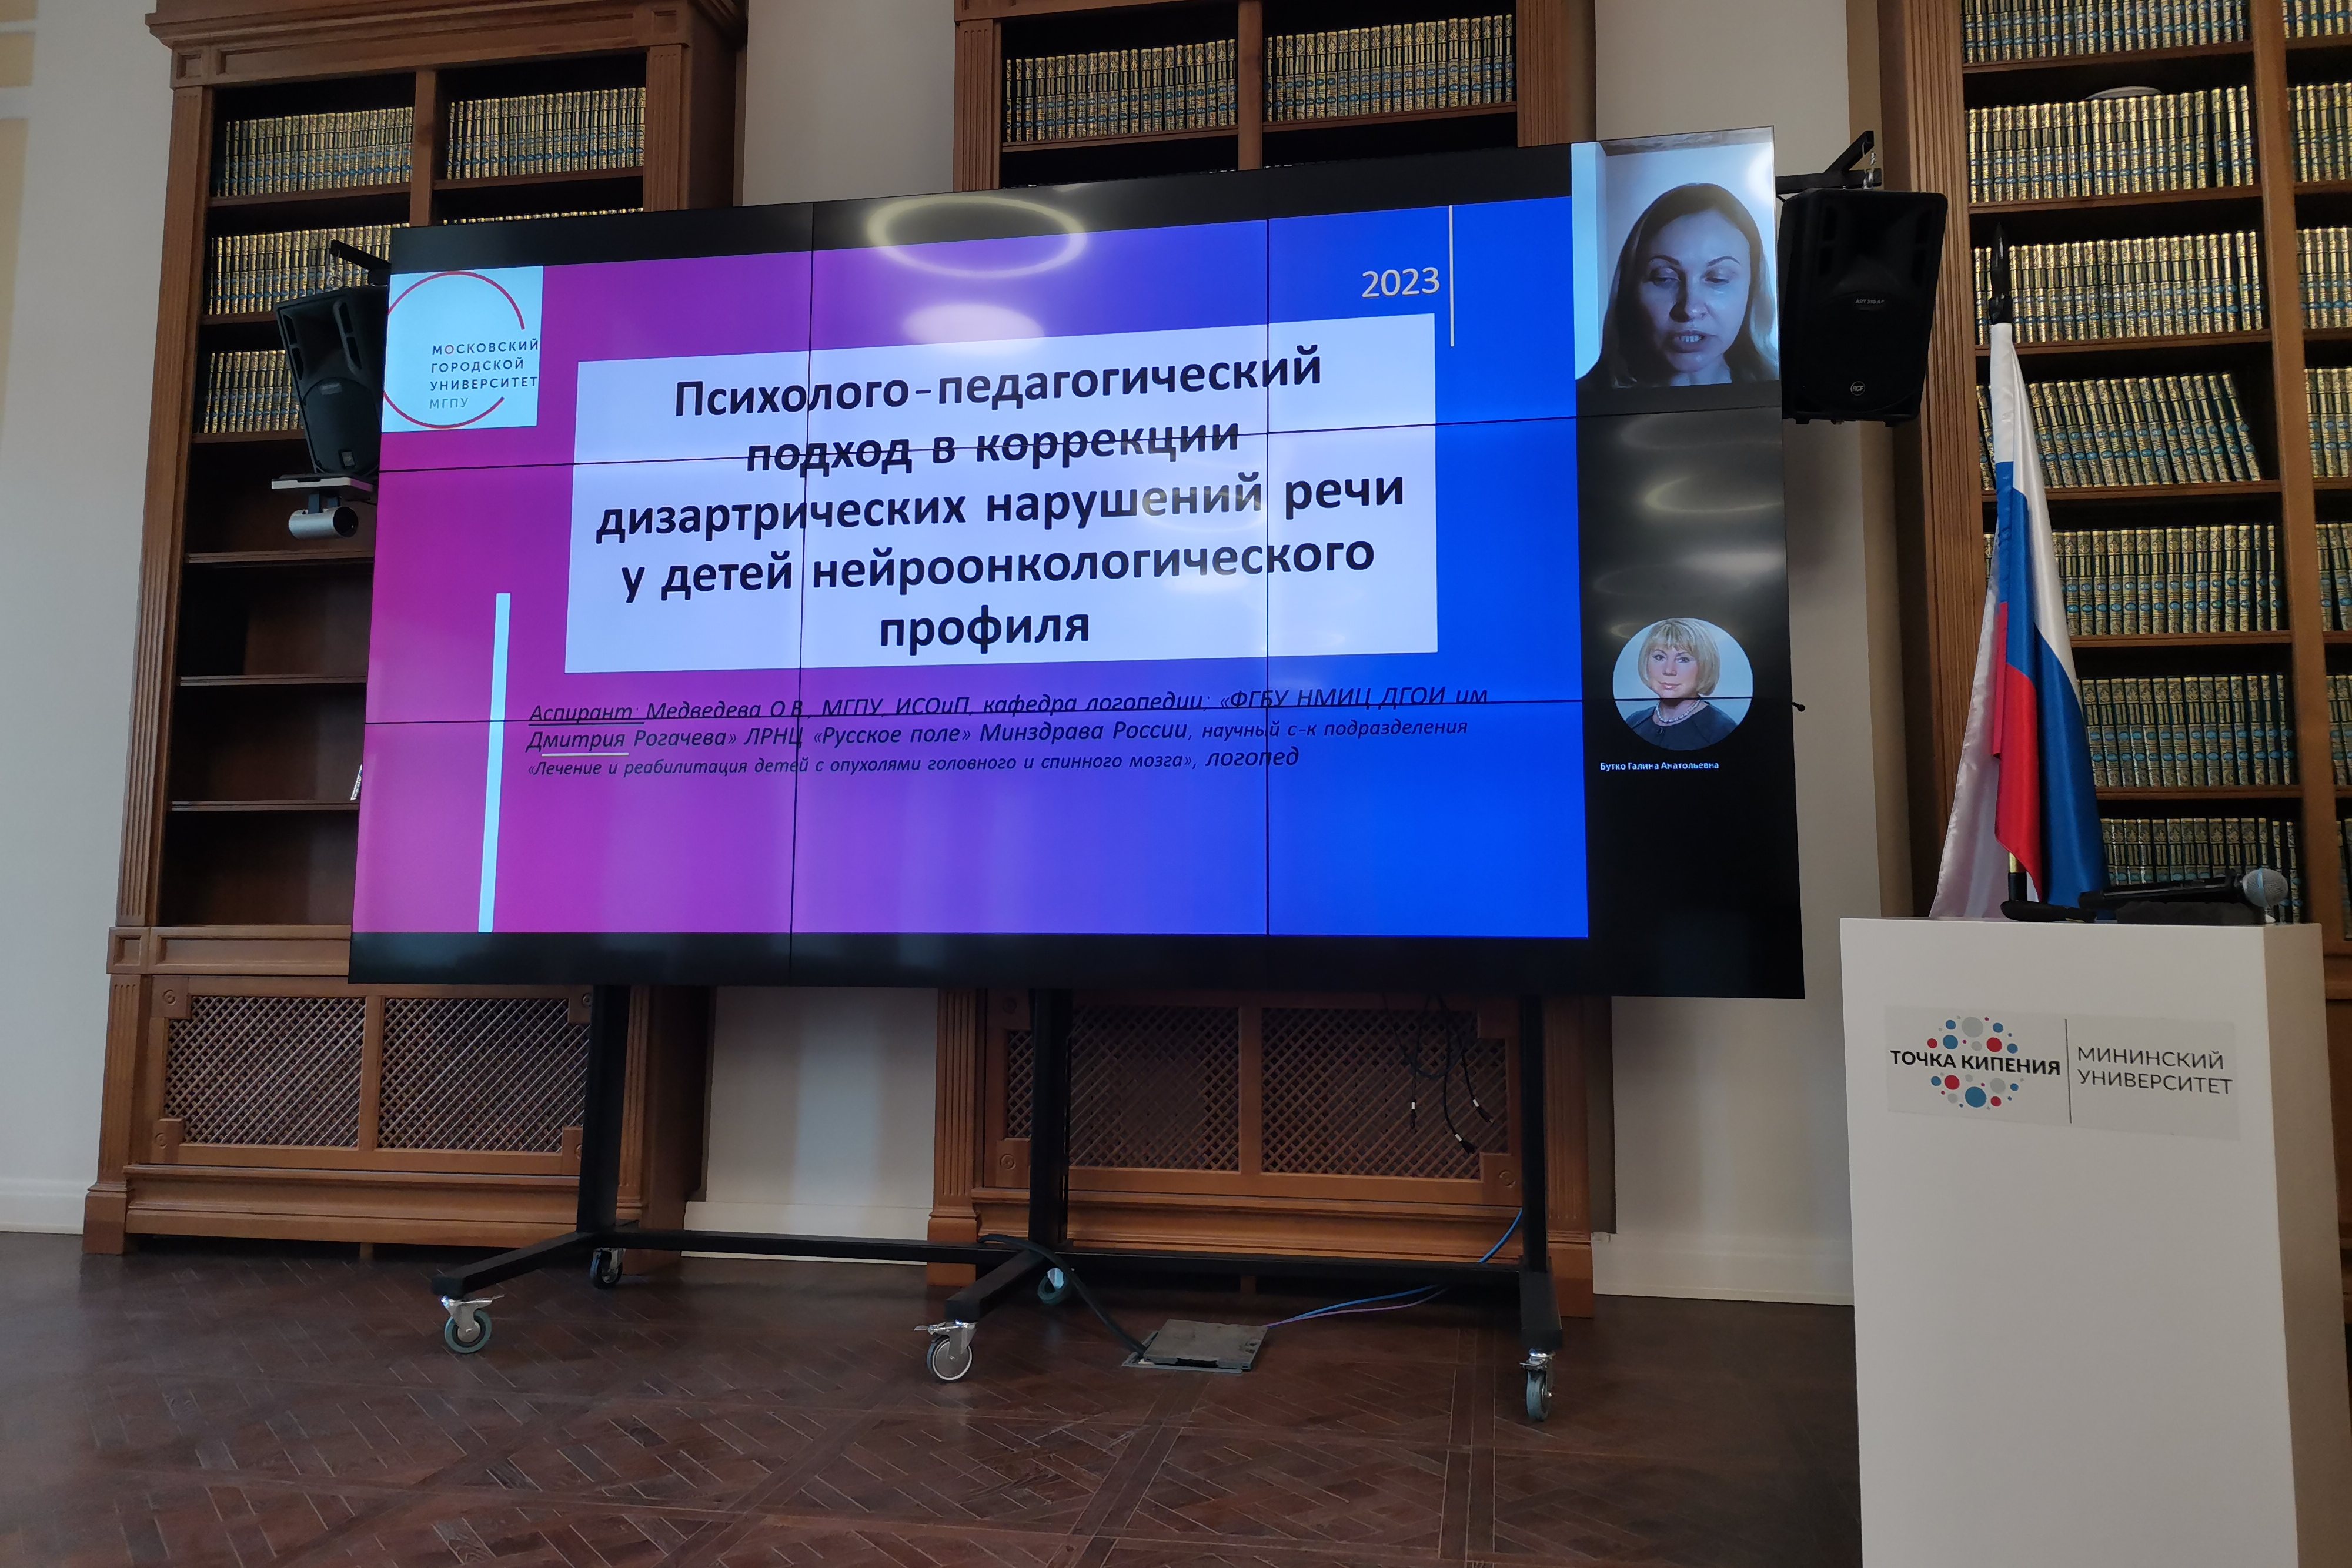   Всероссийская студенческая конференция по дефектологии прошла в Мининском университете в пятый раз